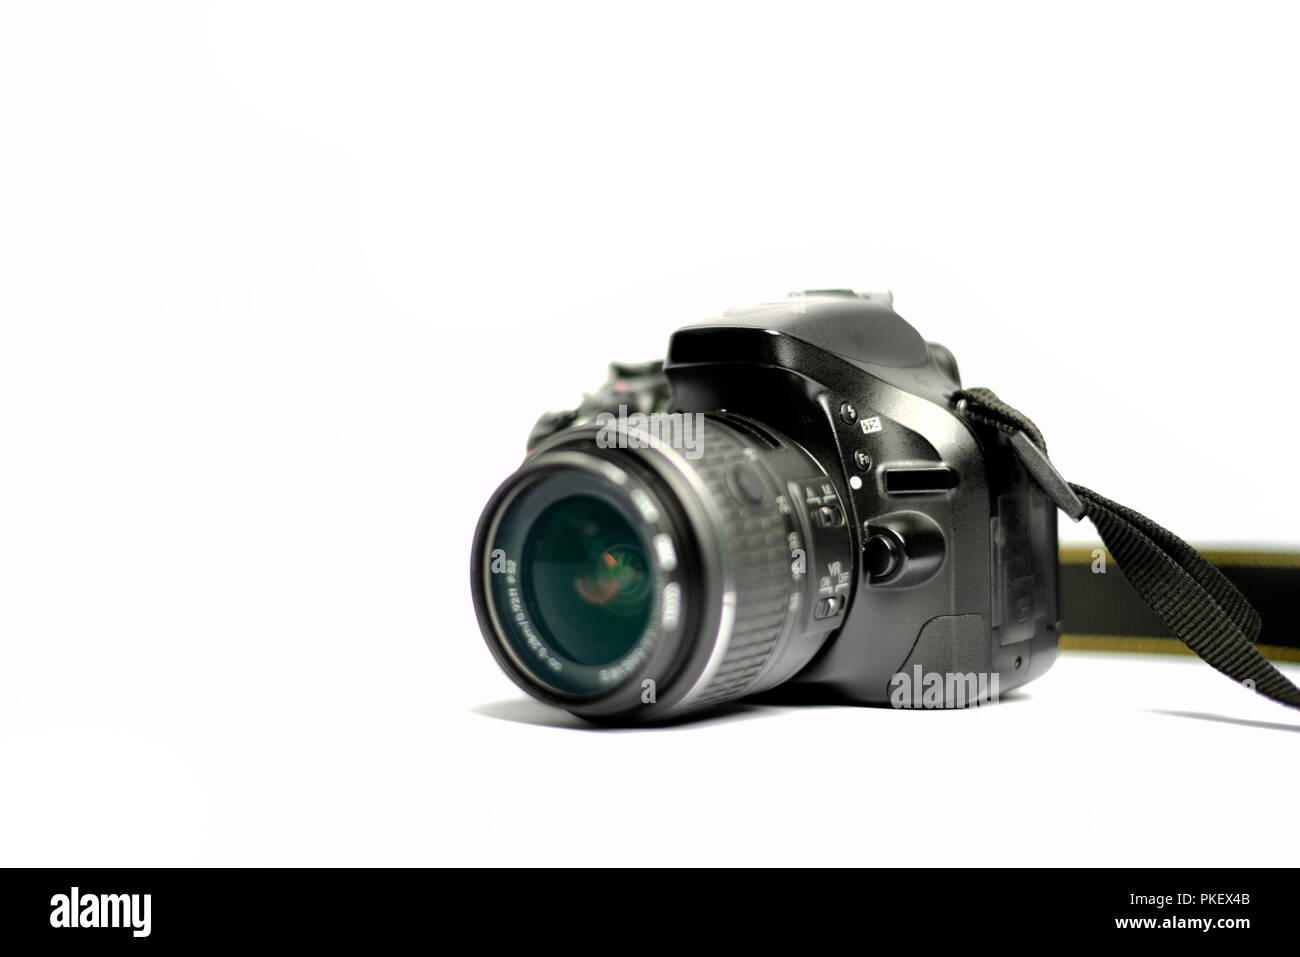 Fotocamera reflex digitale e la lente isolati su sfondo bianco Foto Stock